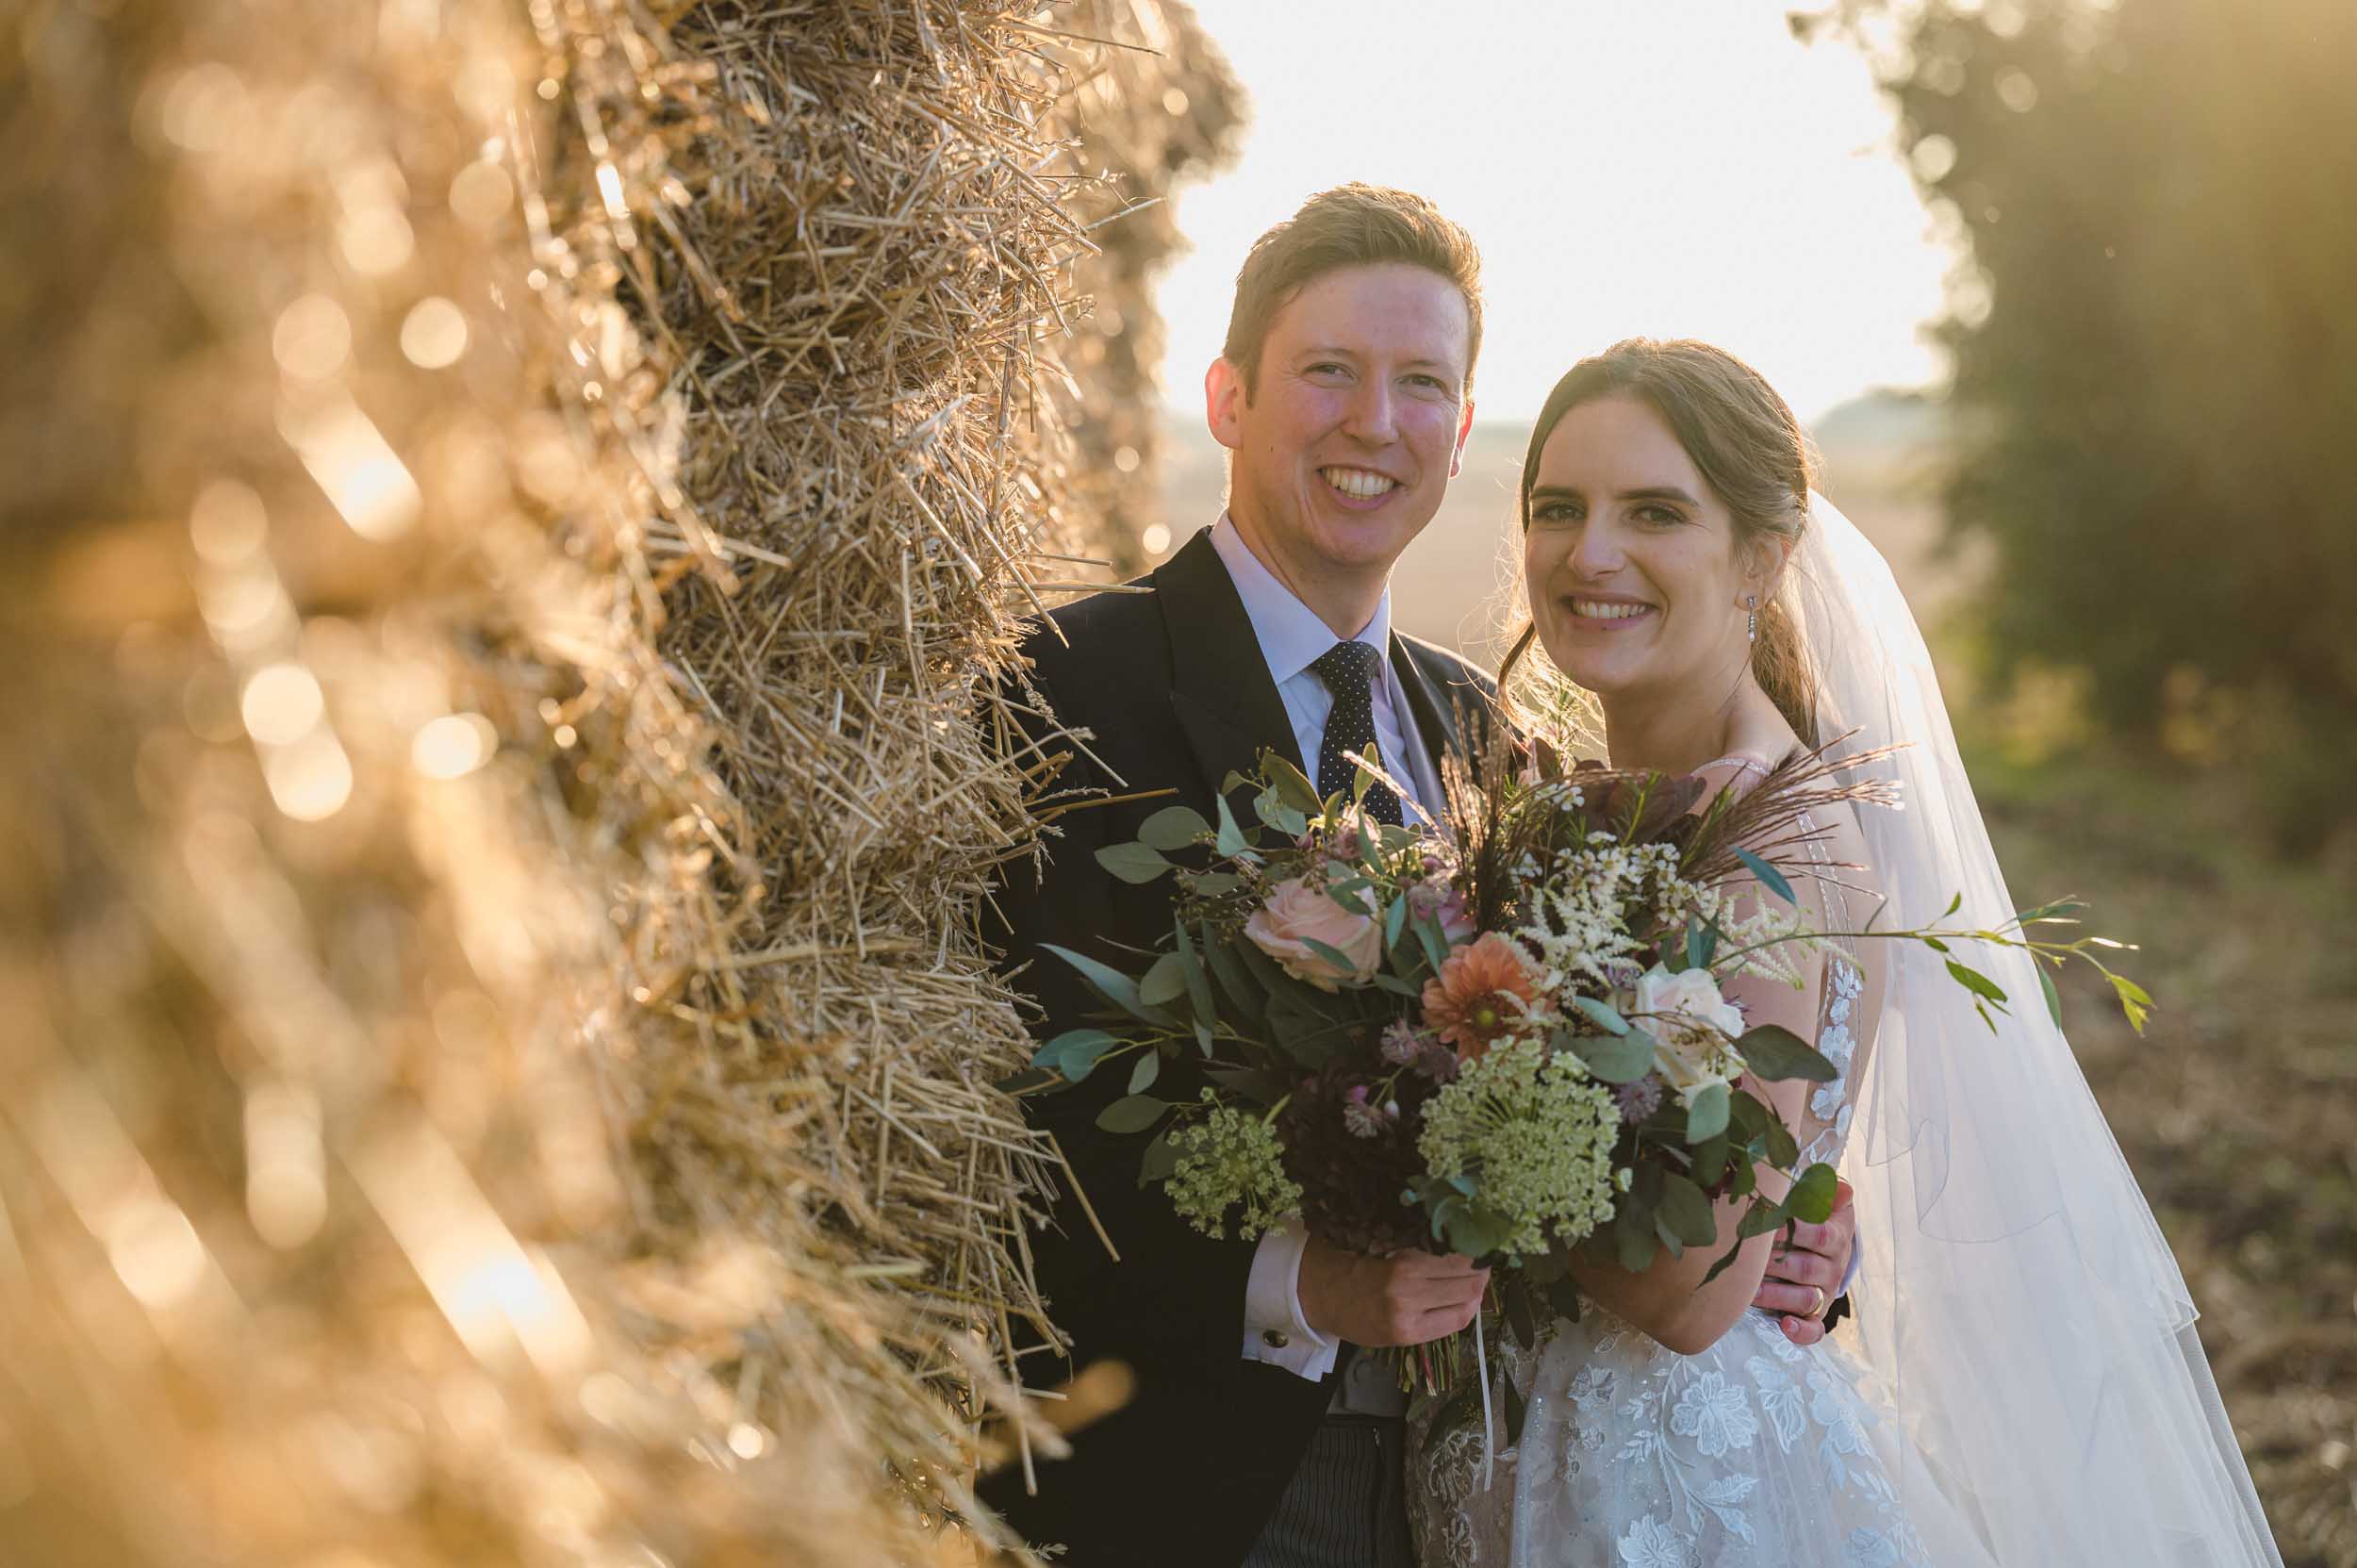 Lincolnshire farm wedding – Bec & Oli